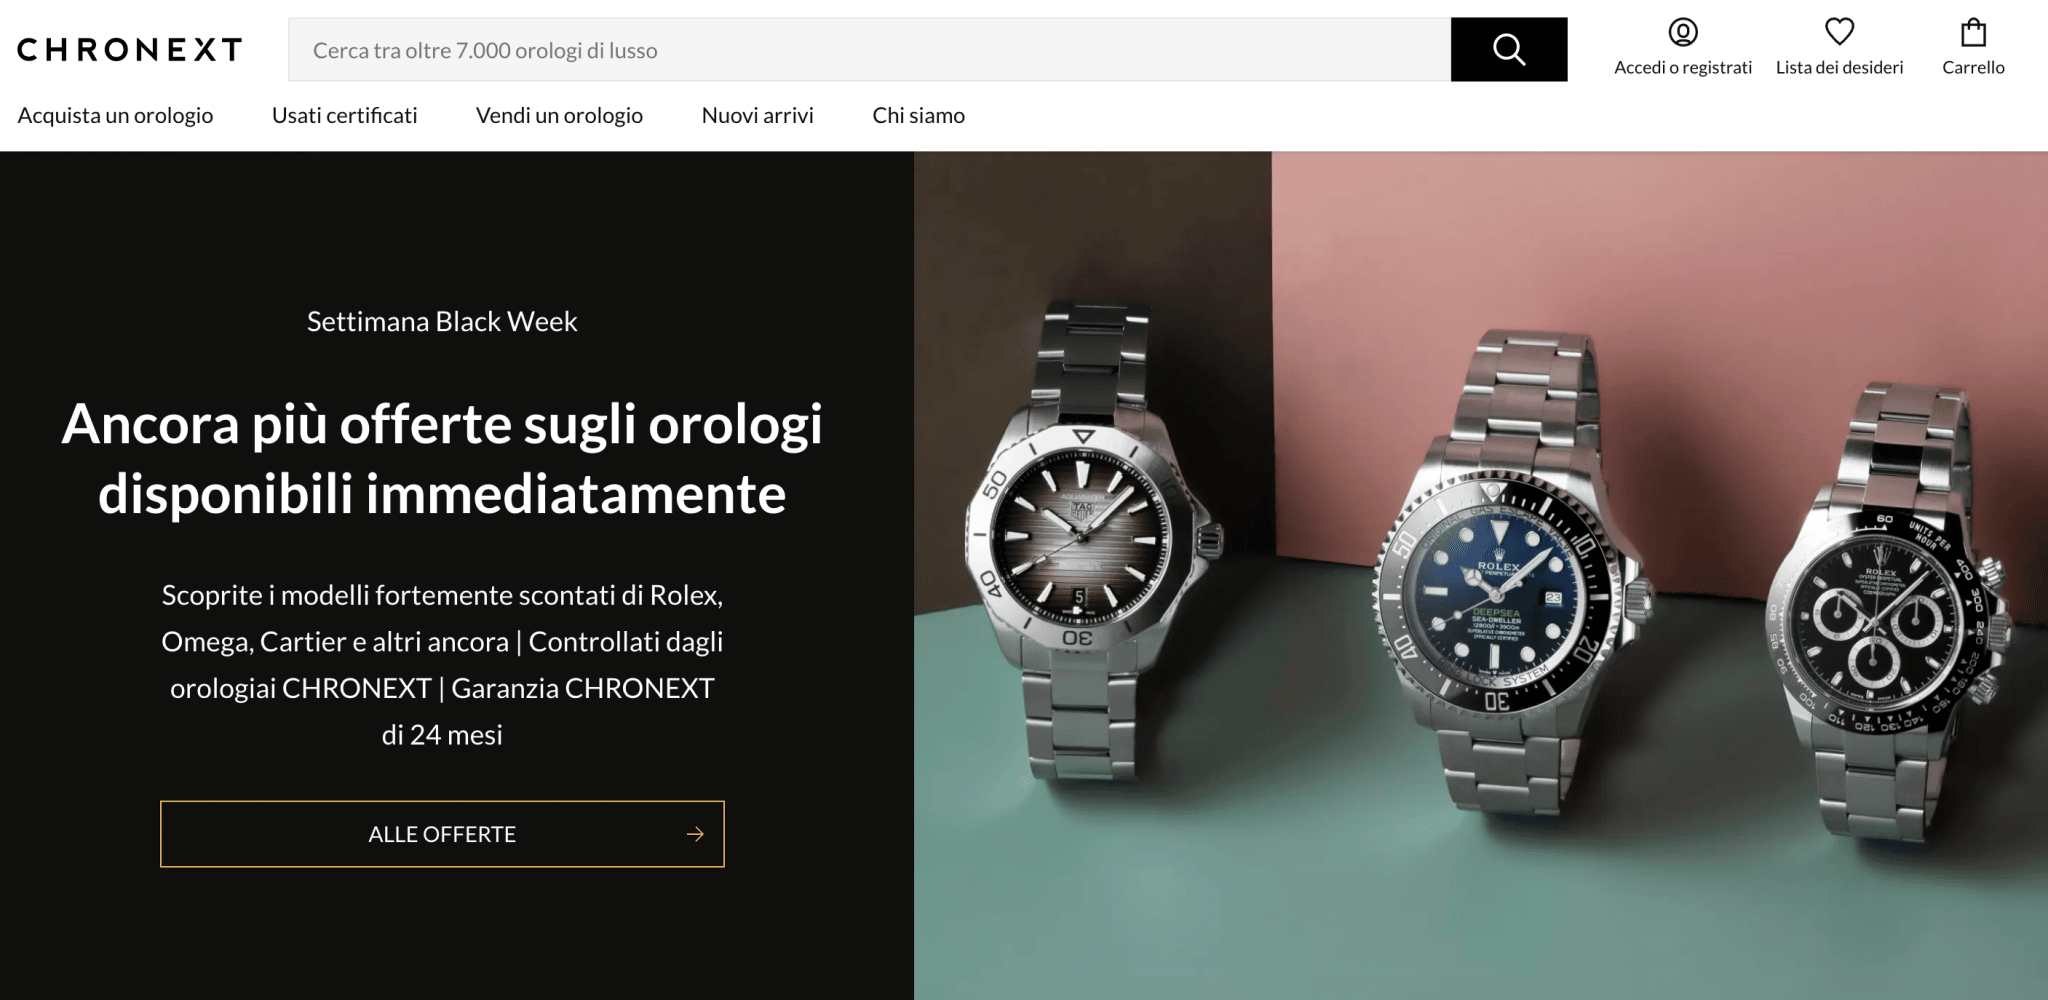 Investire in orologi Rolex può essere fatto su Chronext